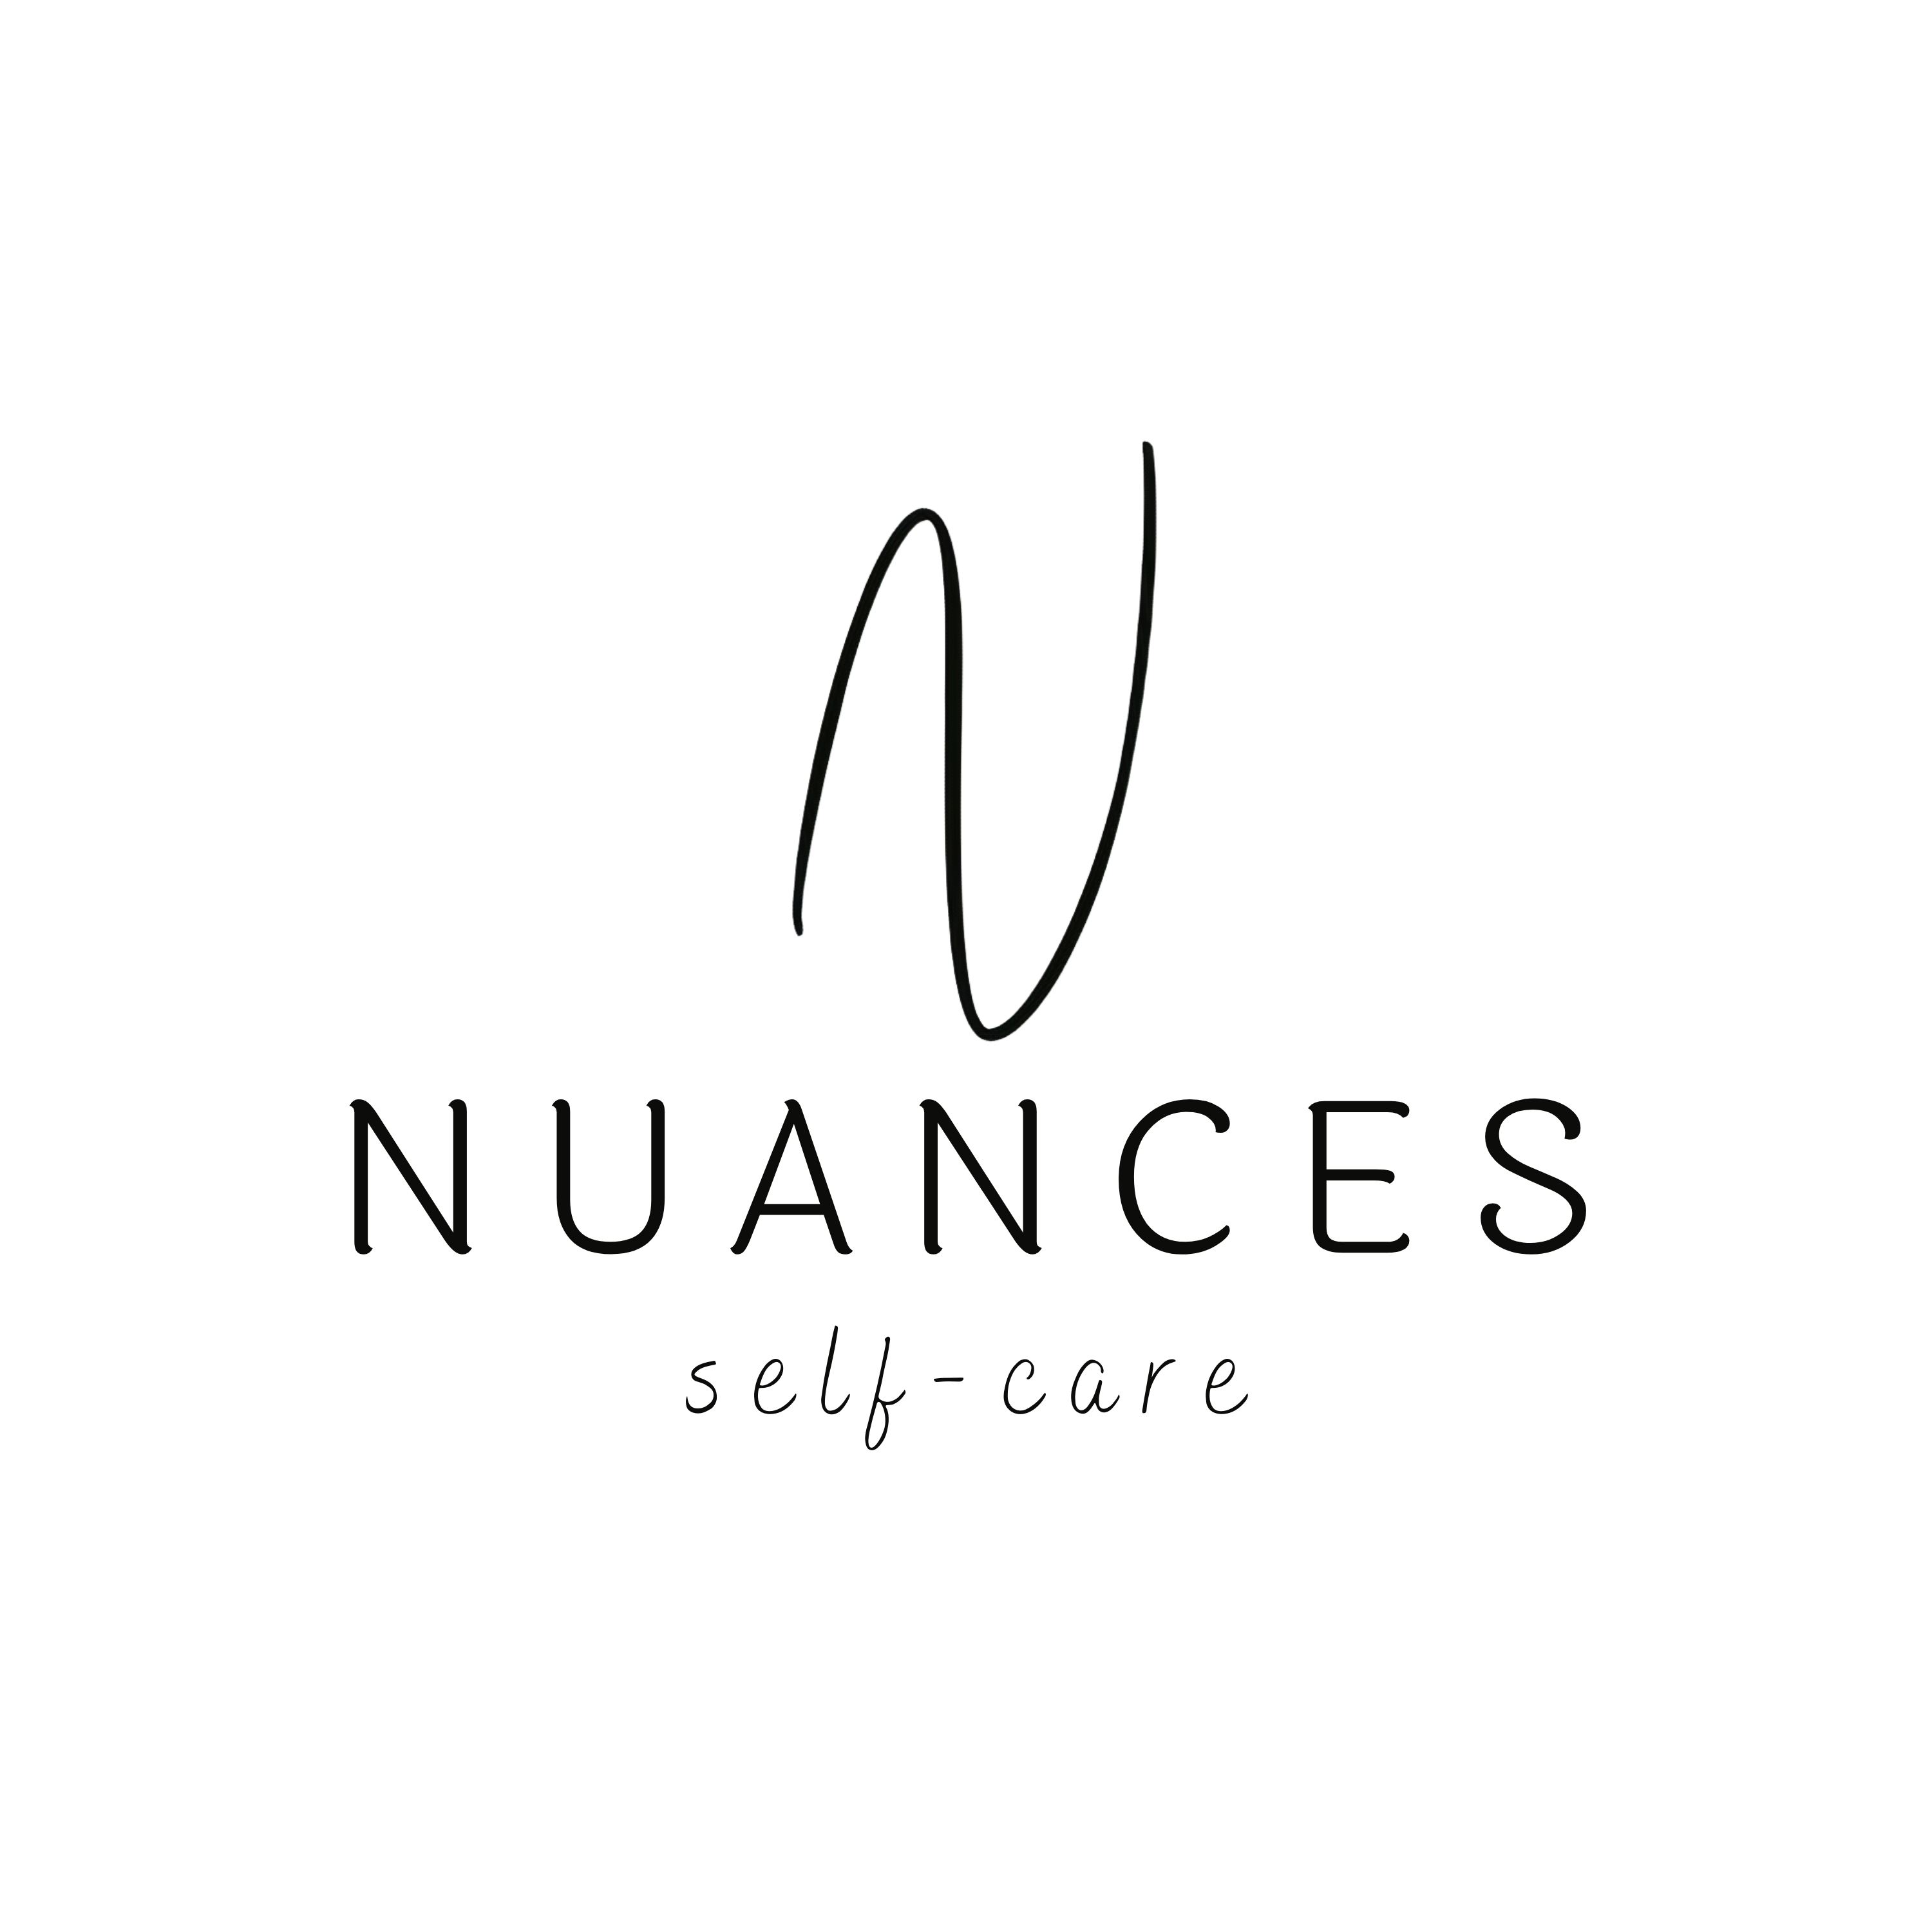 Nuances self-care